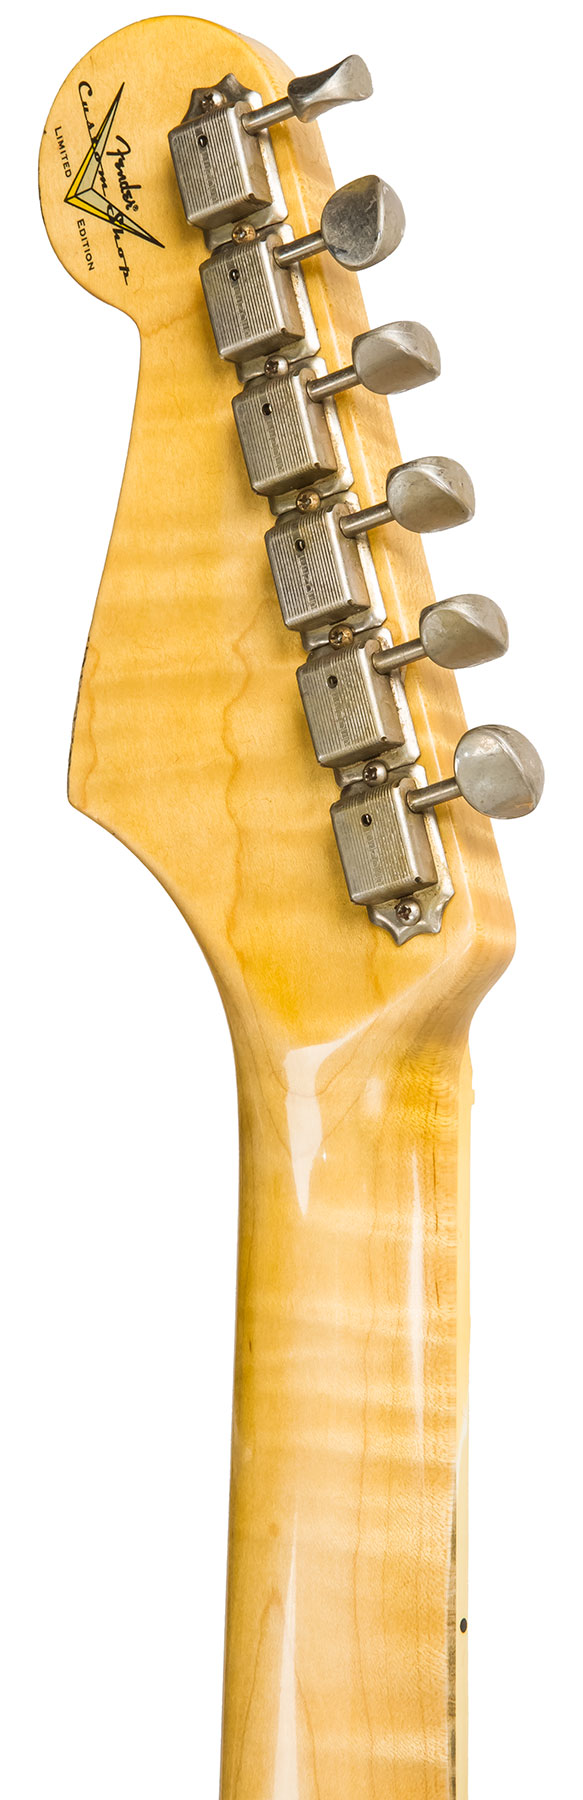 Fender Custom Shop Strat 1965 Ltd Usa Rw #cz548544 - Relic Daphne Blue Sparkle - Guitare Électrique Forme Str - Variation 6